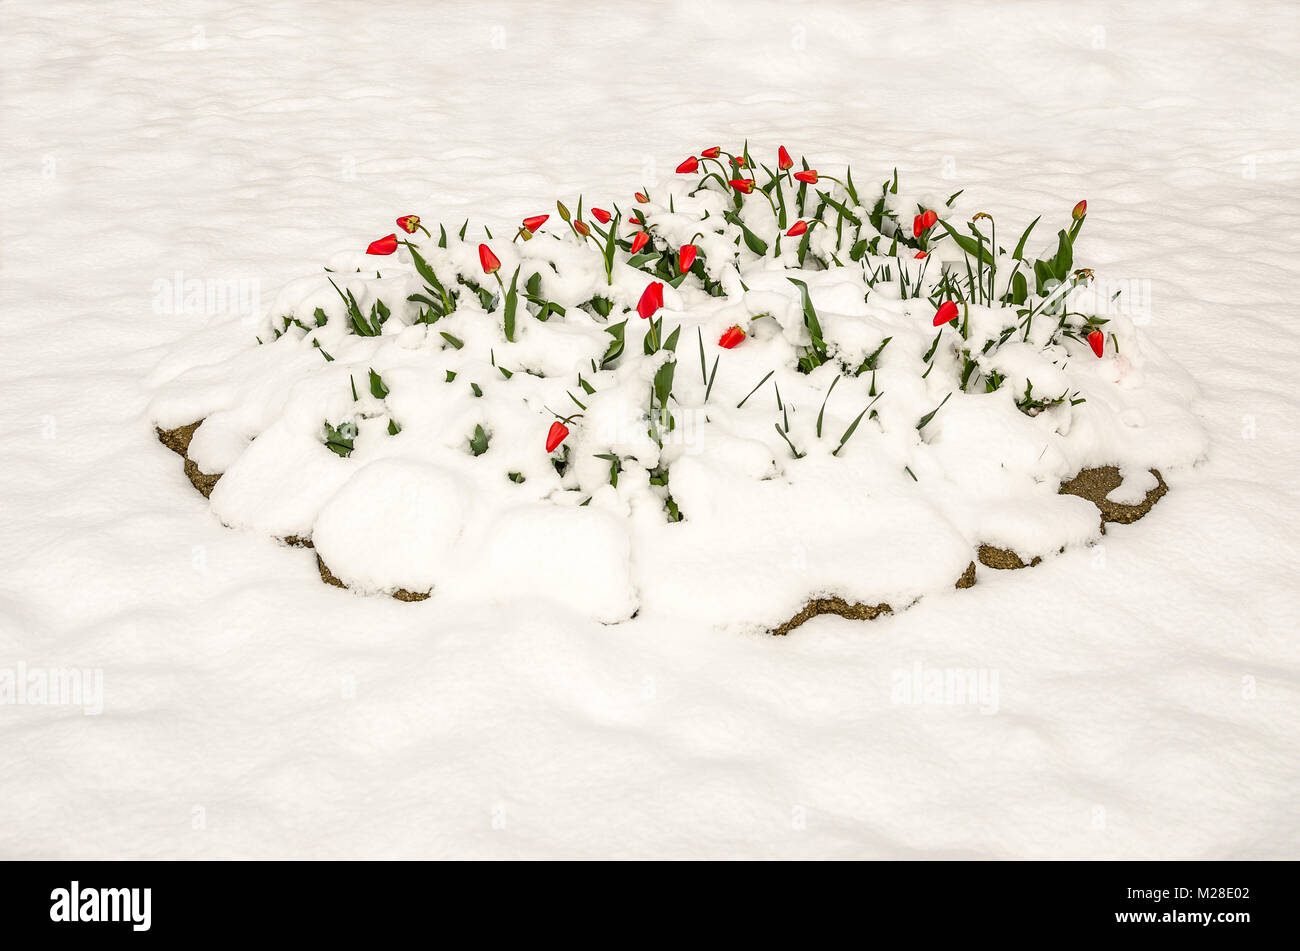 Rote Tulpen teilweise unter einem schweren, nassen Frühling Schnee begraben Stockfoto